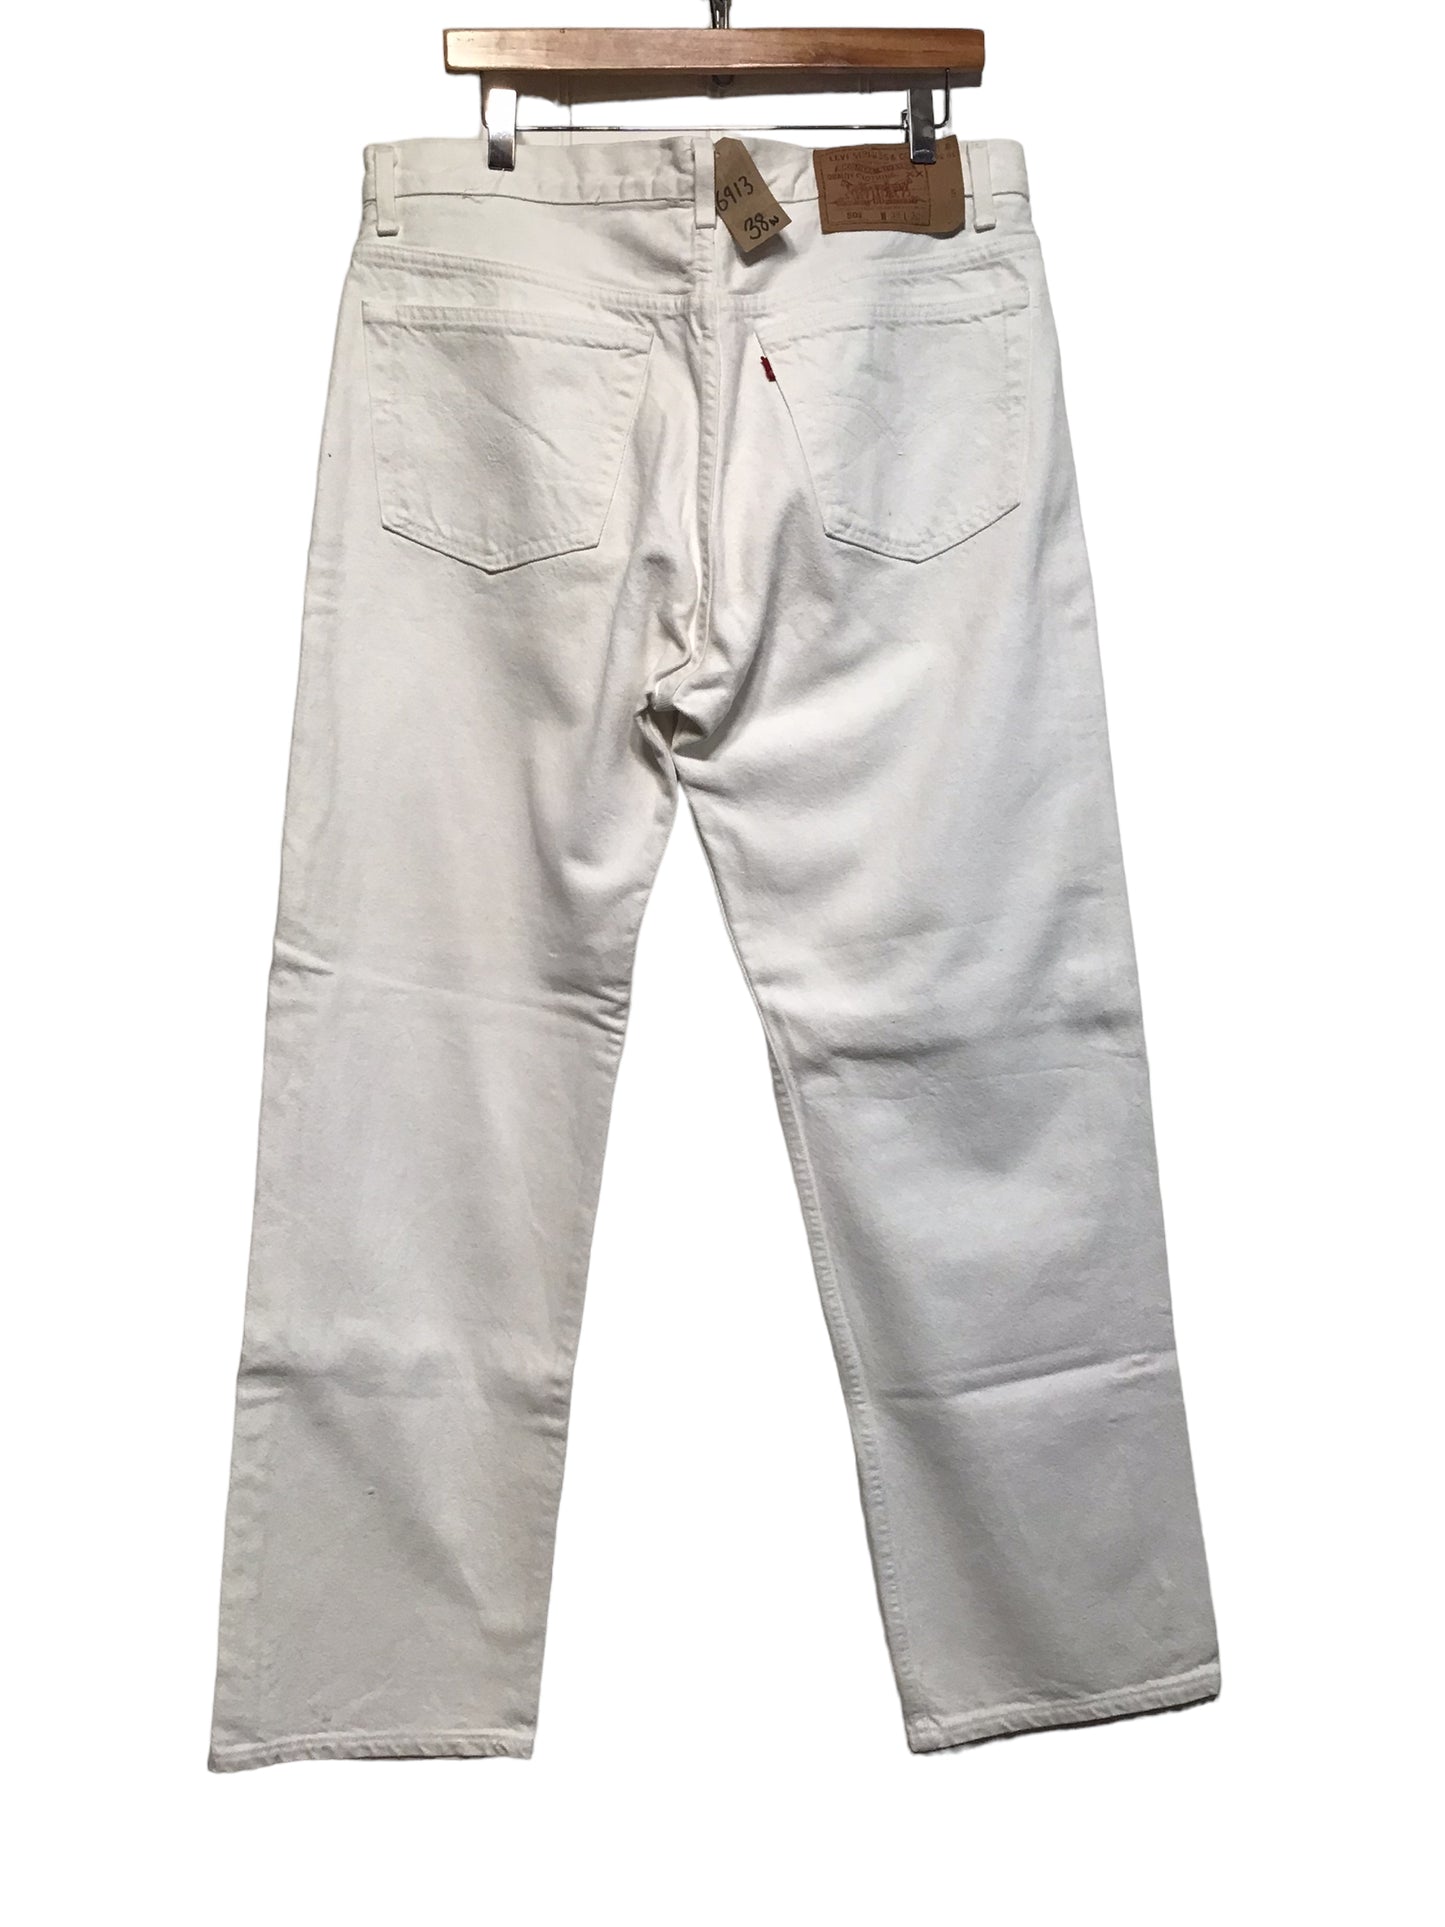 Levi 501 Jeans (38x30)